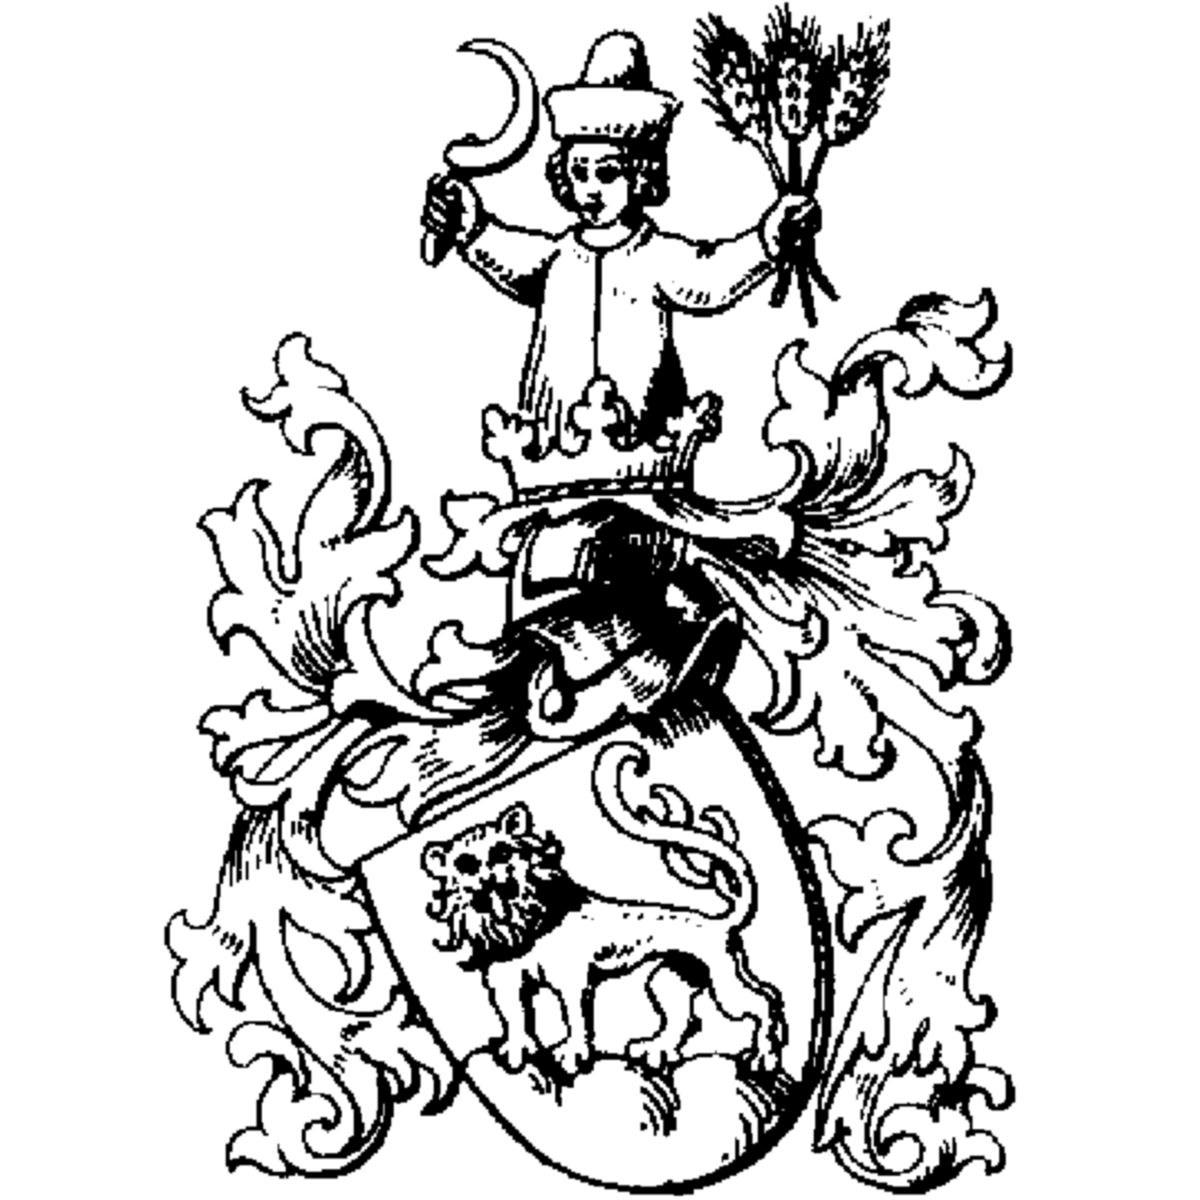 Wappen der Familie Nicolay